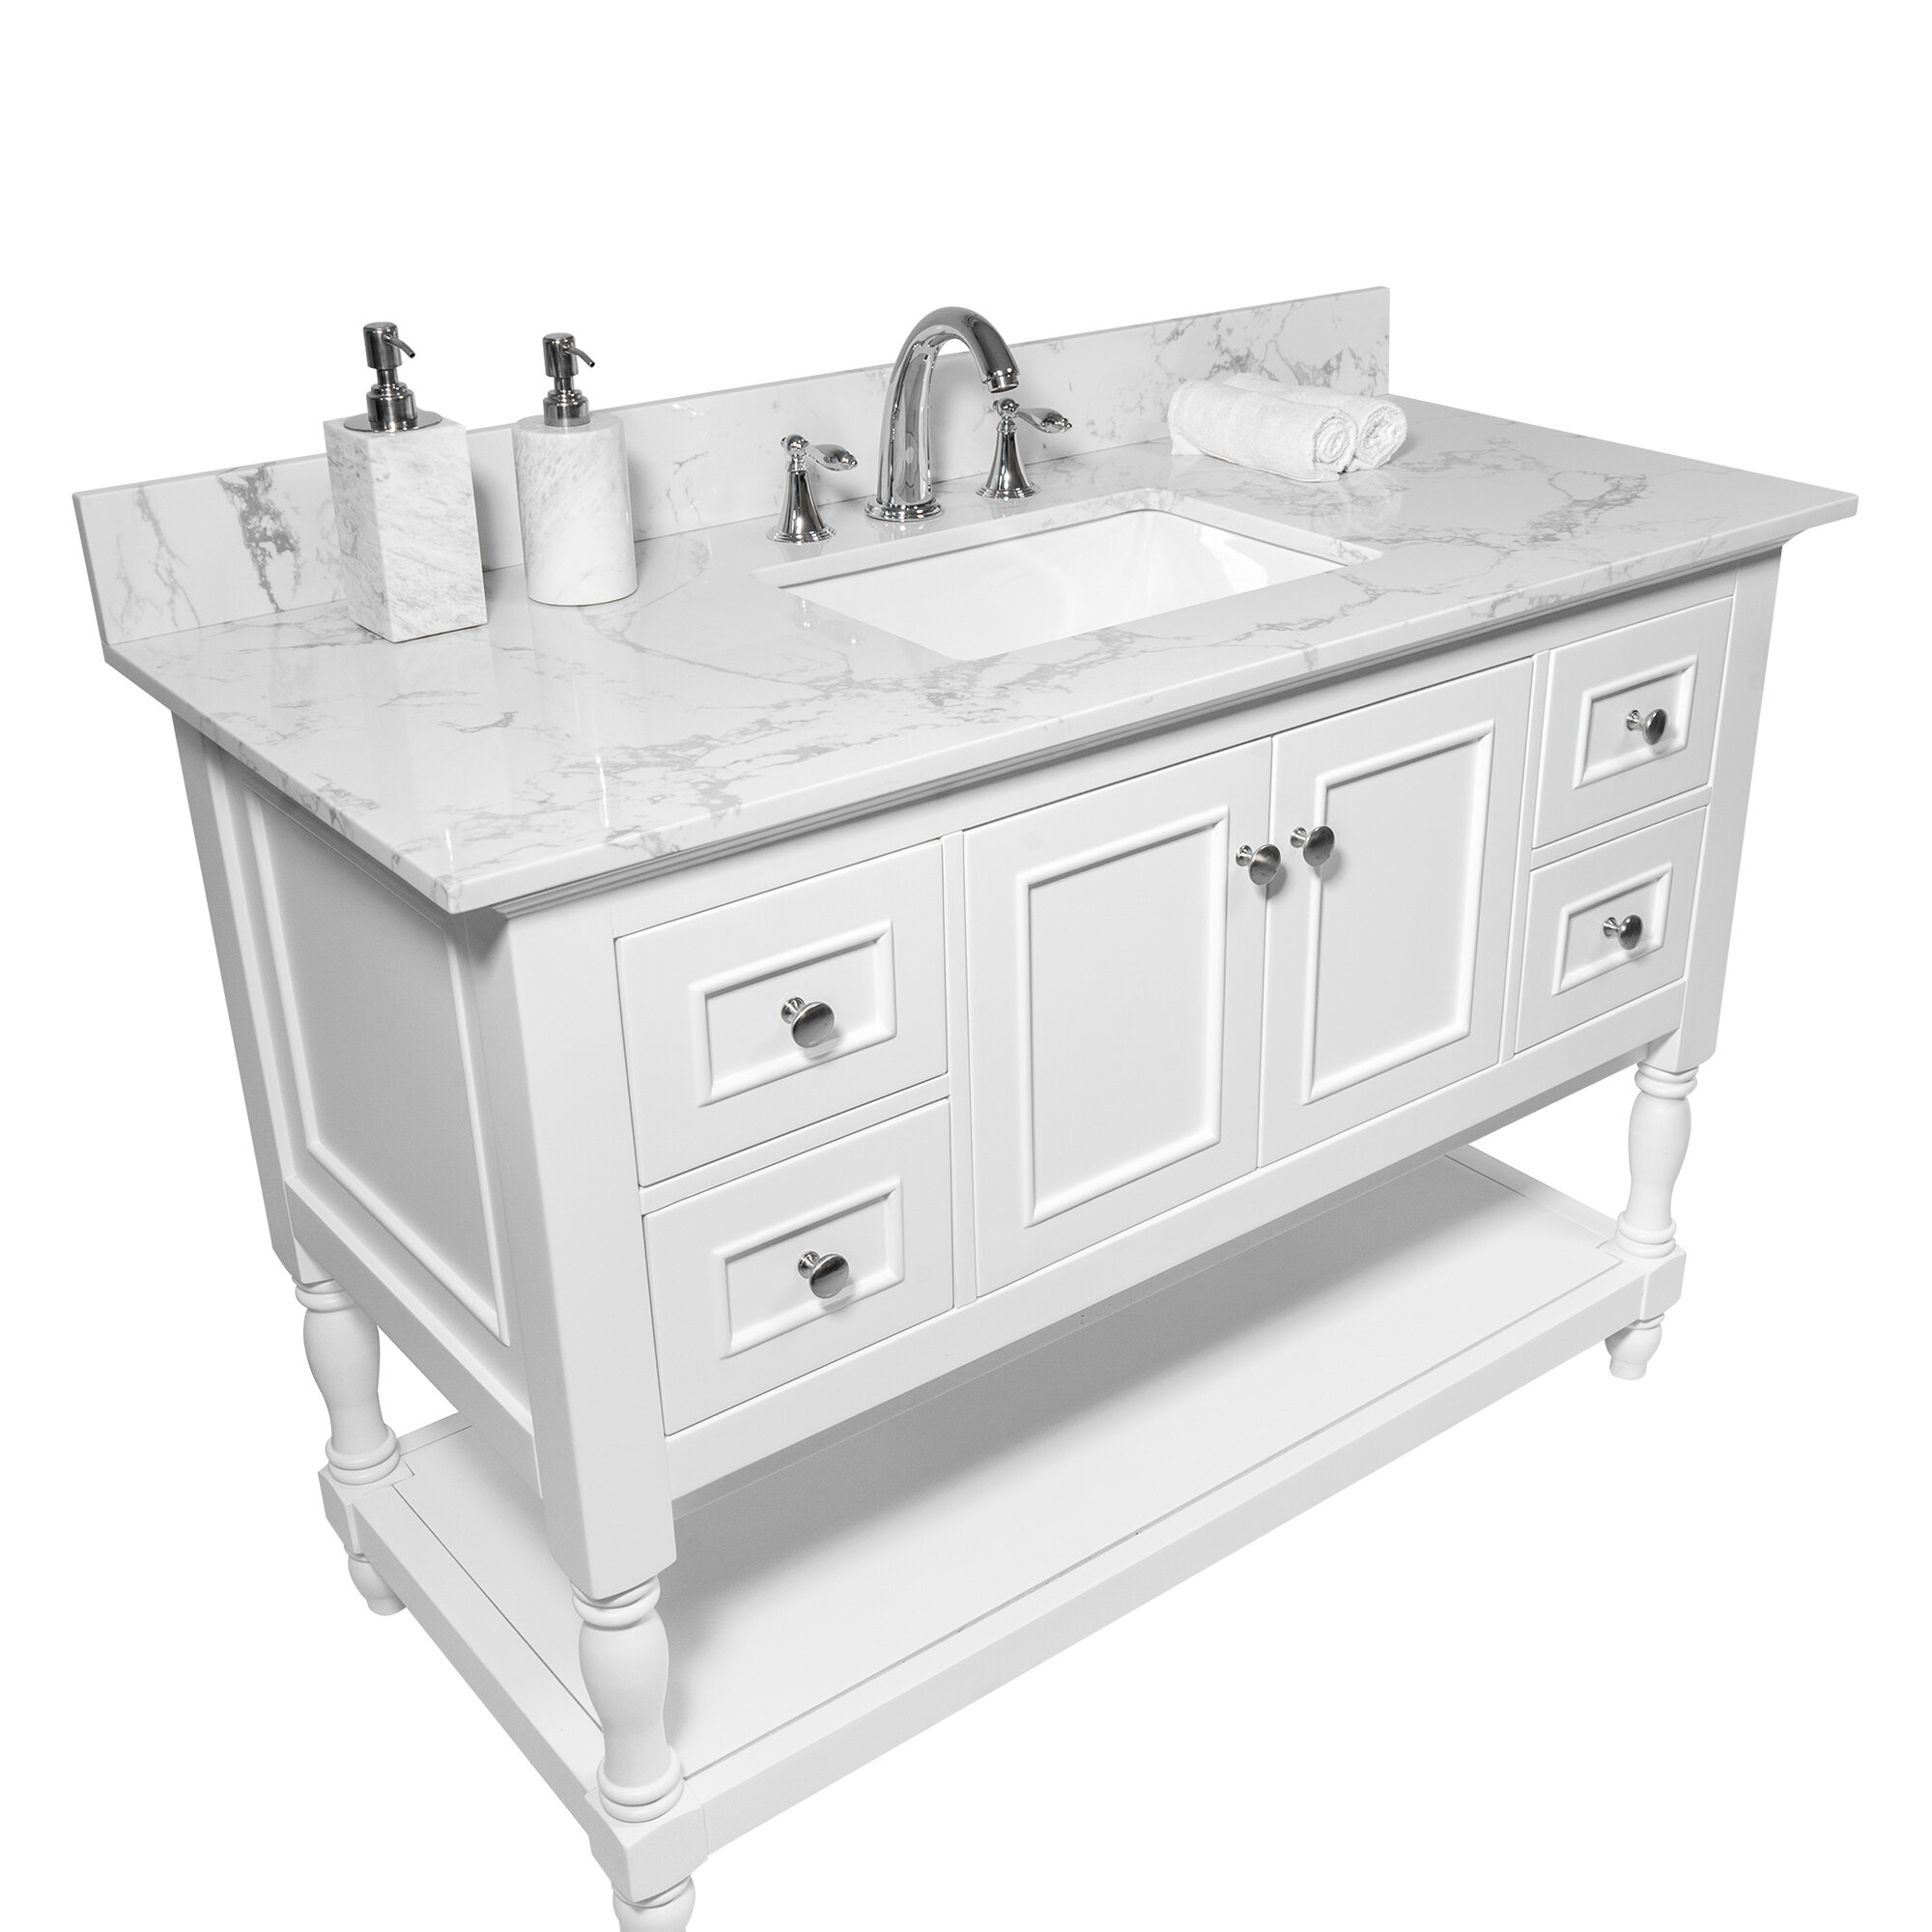 Watqen 43 Single Bathroom Vanity Top In White With Sink Reviews Wayfair